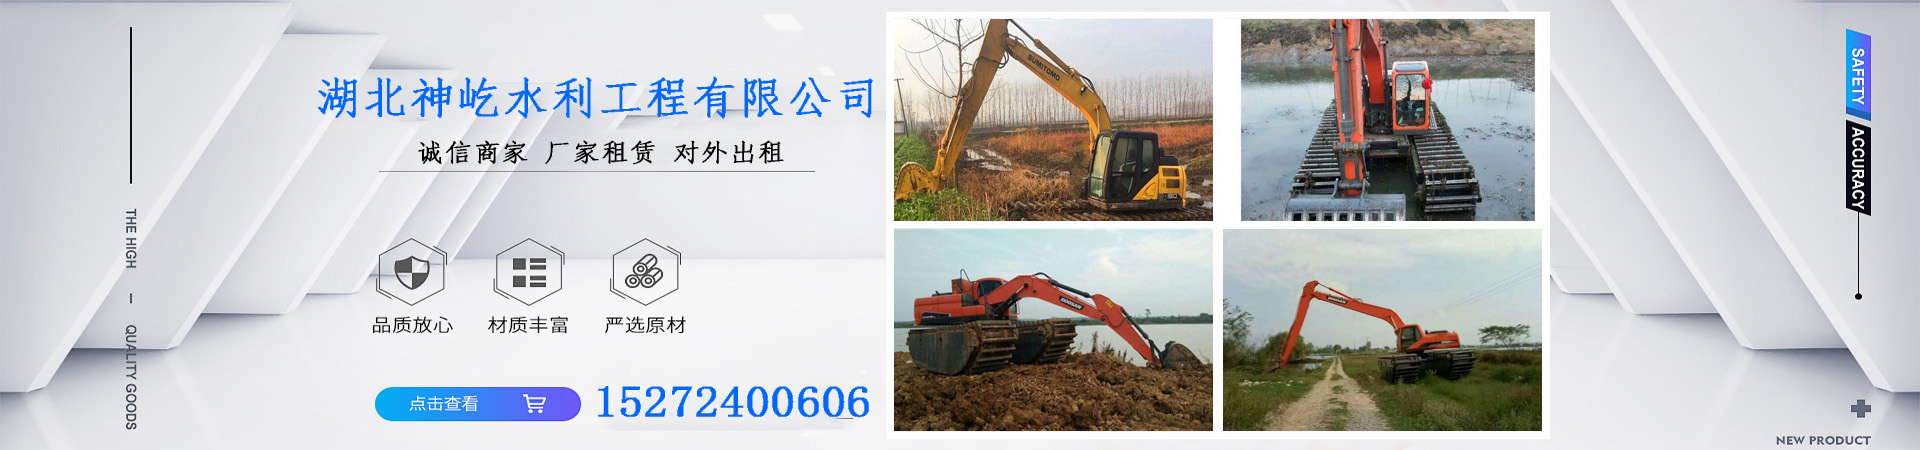 出租水陆挖掘机、台湾本地出租水陆挖掘机、台湾、台湾出租水陆挖掘机